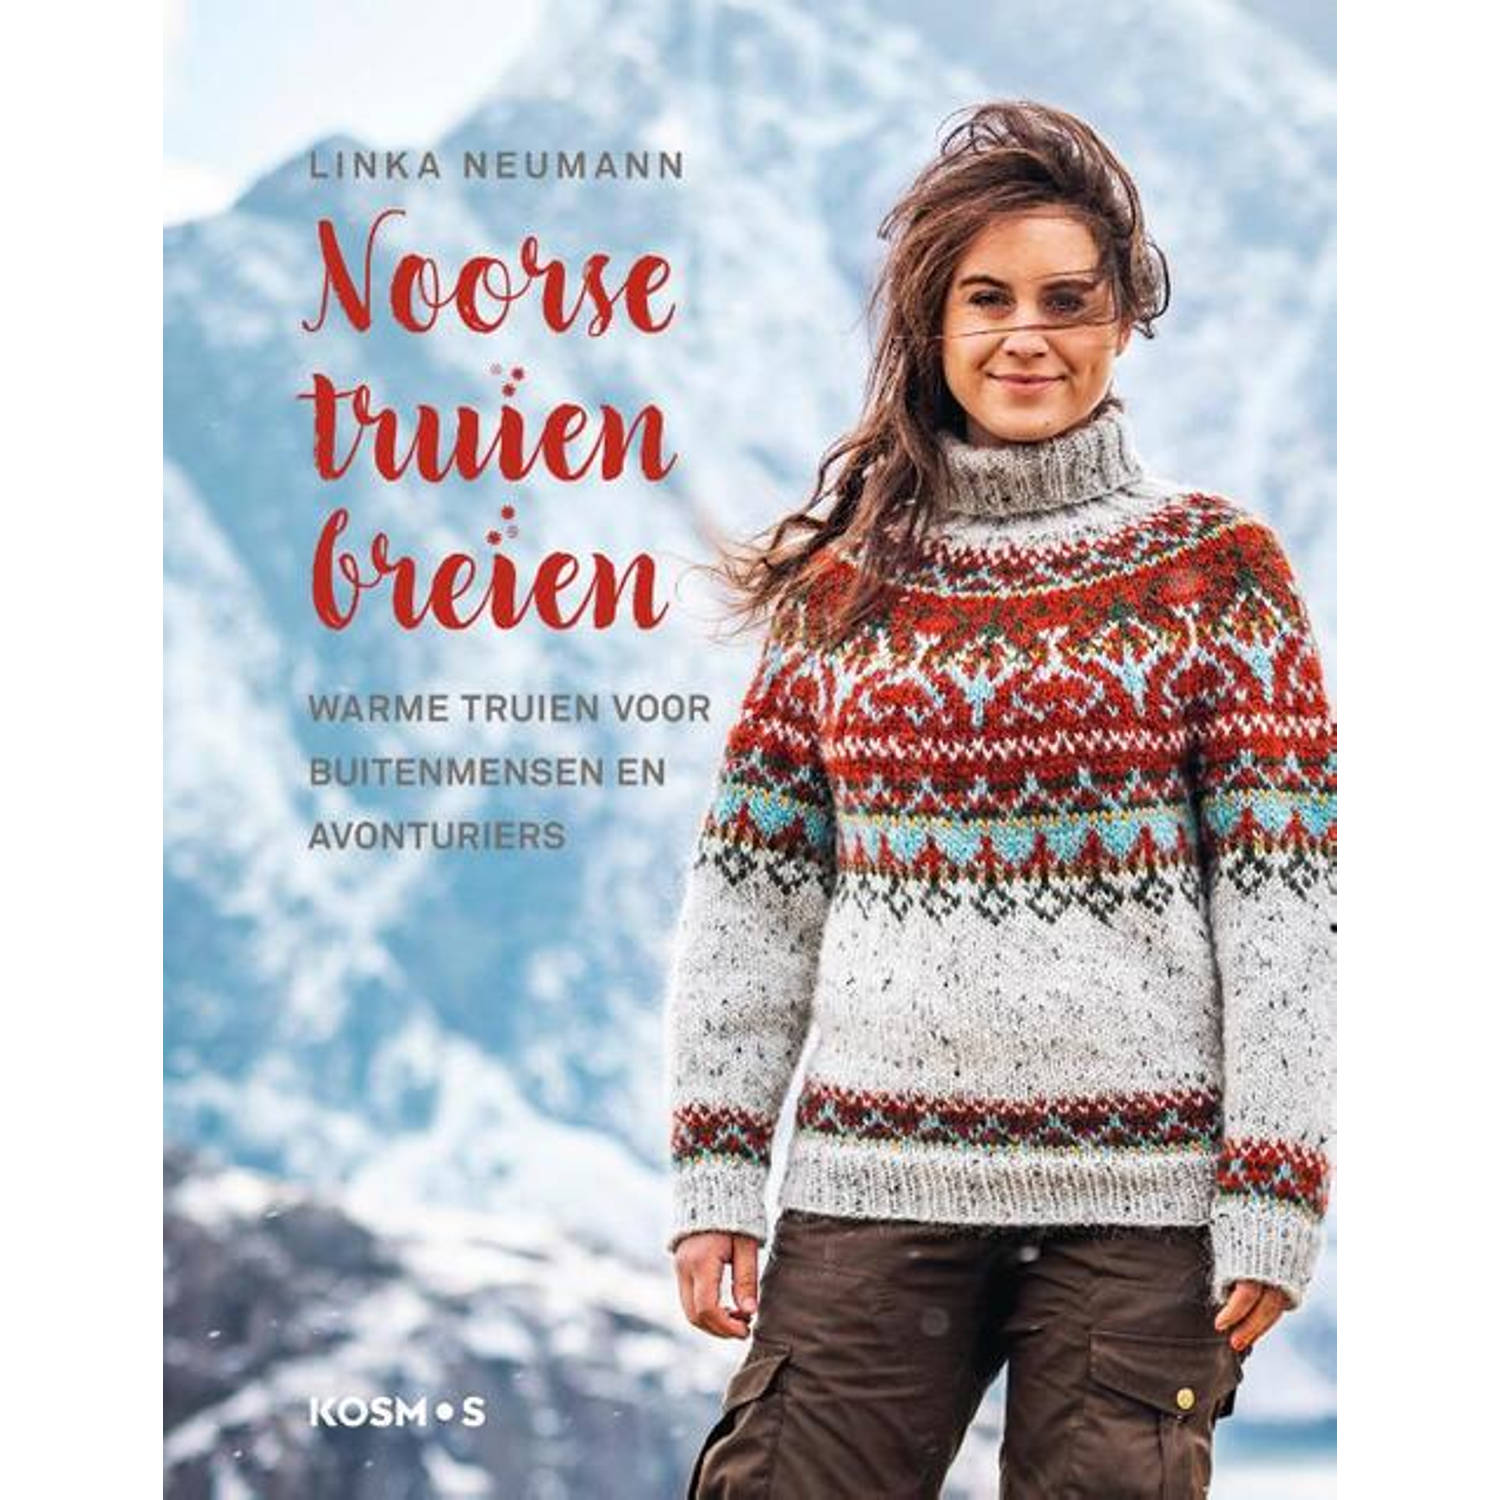 Noorse truien breien - (ISBN:9789043922883)